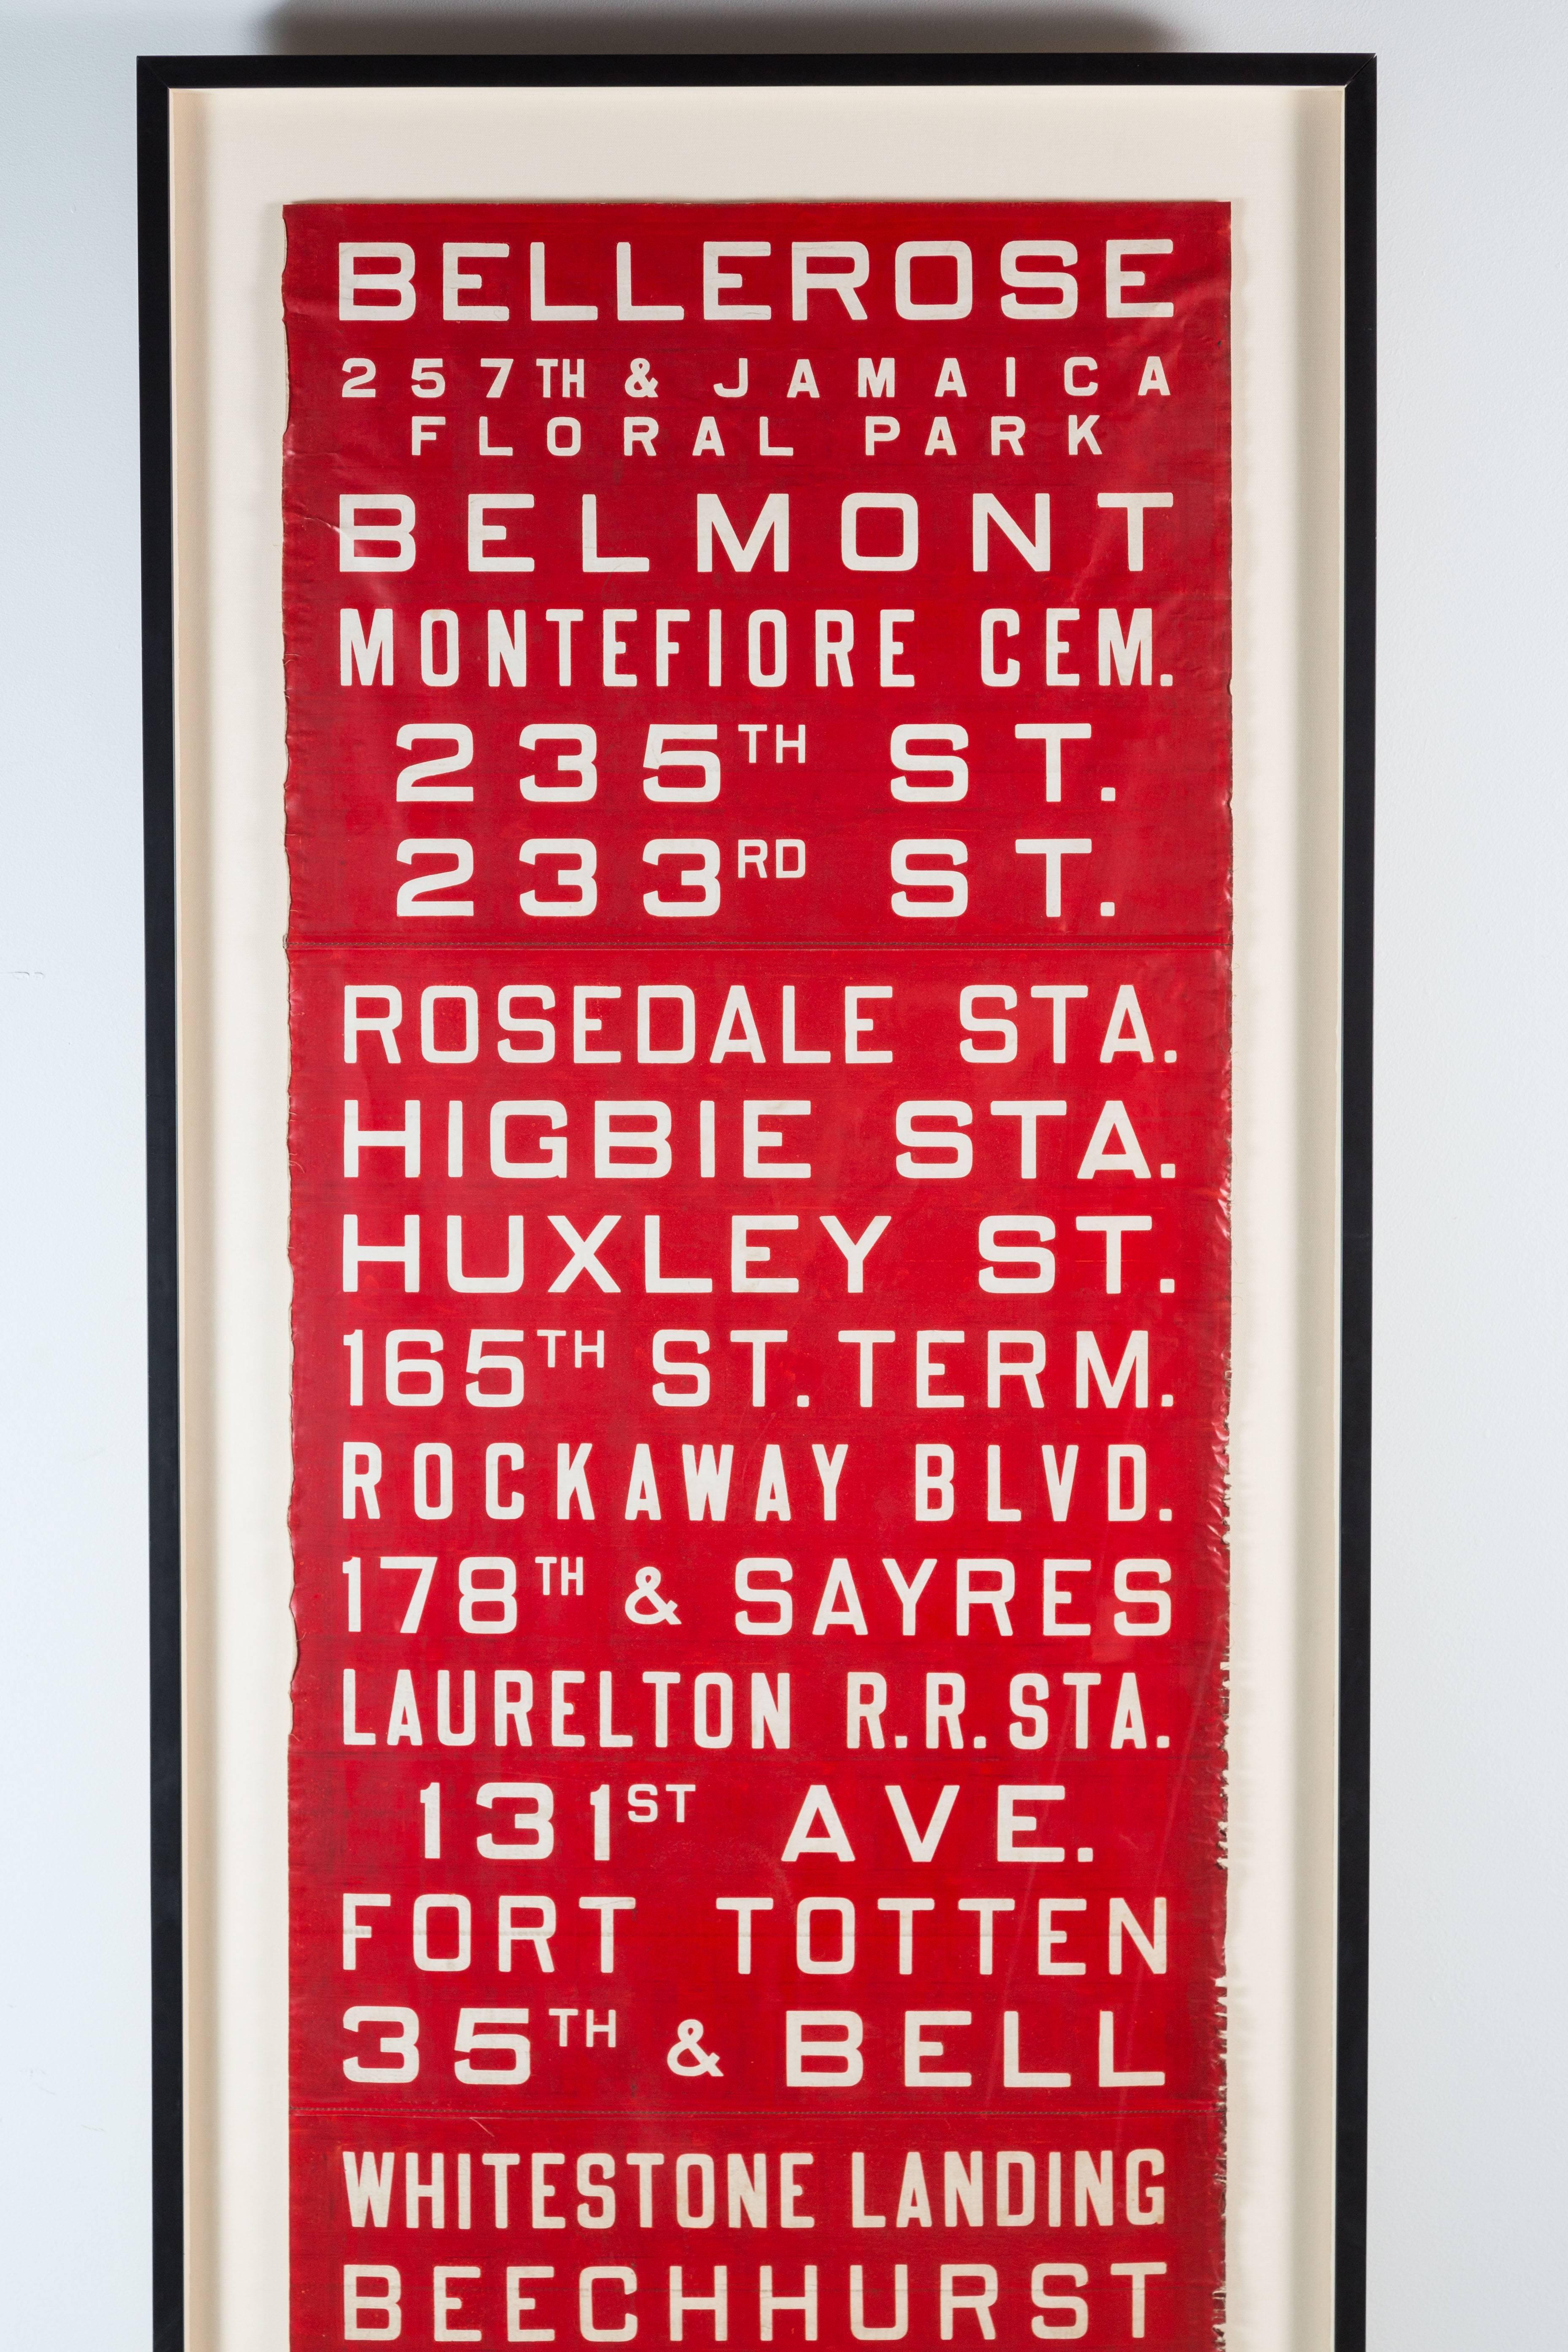 Sehr großes New Yorker Buszielschild. Ungewöhnlich in Rot. Sehr anschaulich. Die Unterseite der Rolle ist mit dem Datum 1951 versehen. 7 1/2 Fuß hoch.